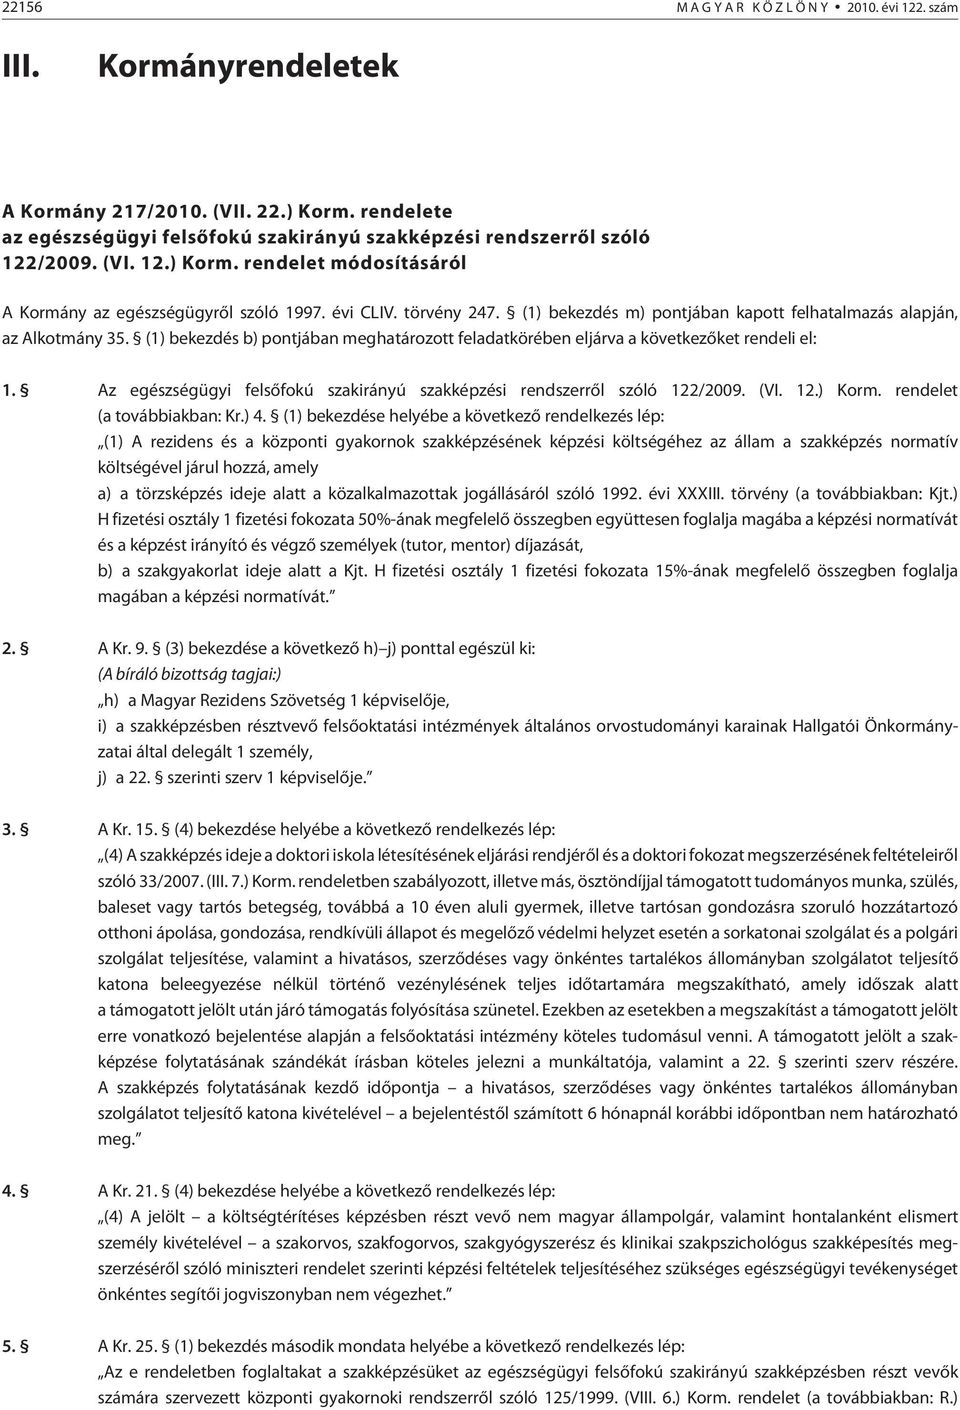 Az egészségügyi felsõfokú szakirányú szakképzési rendszerrõl szóló 122/2009. (VI. 12.) Korm. rendelet (a továbbiakban: Kr.) 4.